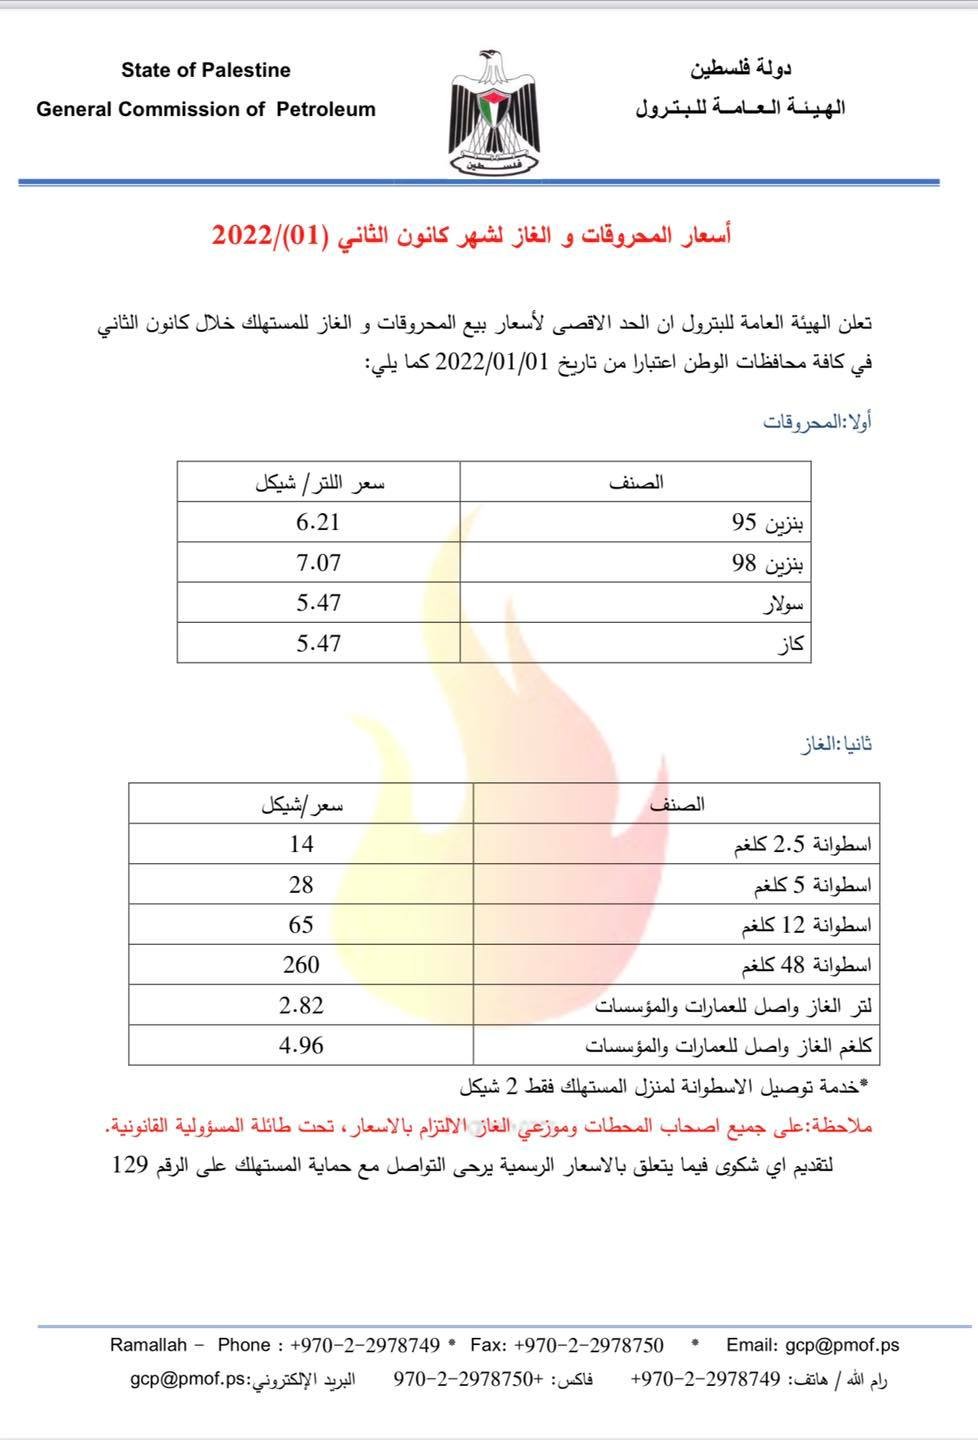 اسعار المحروقات والغاز الرسمية لشهر (1)